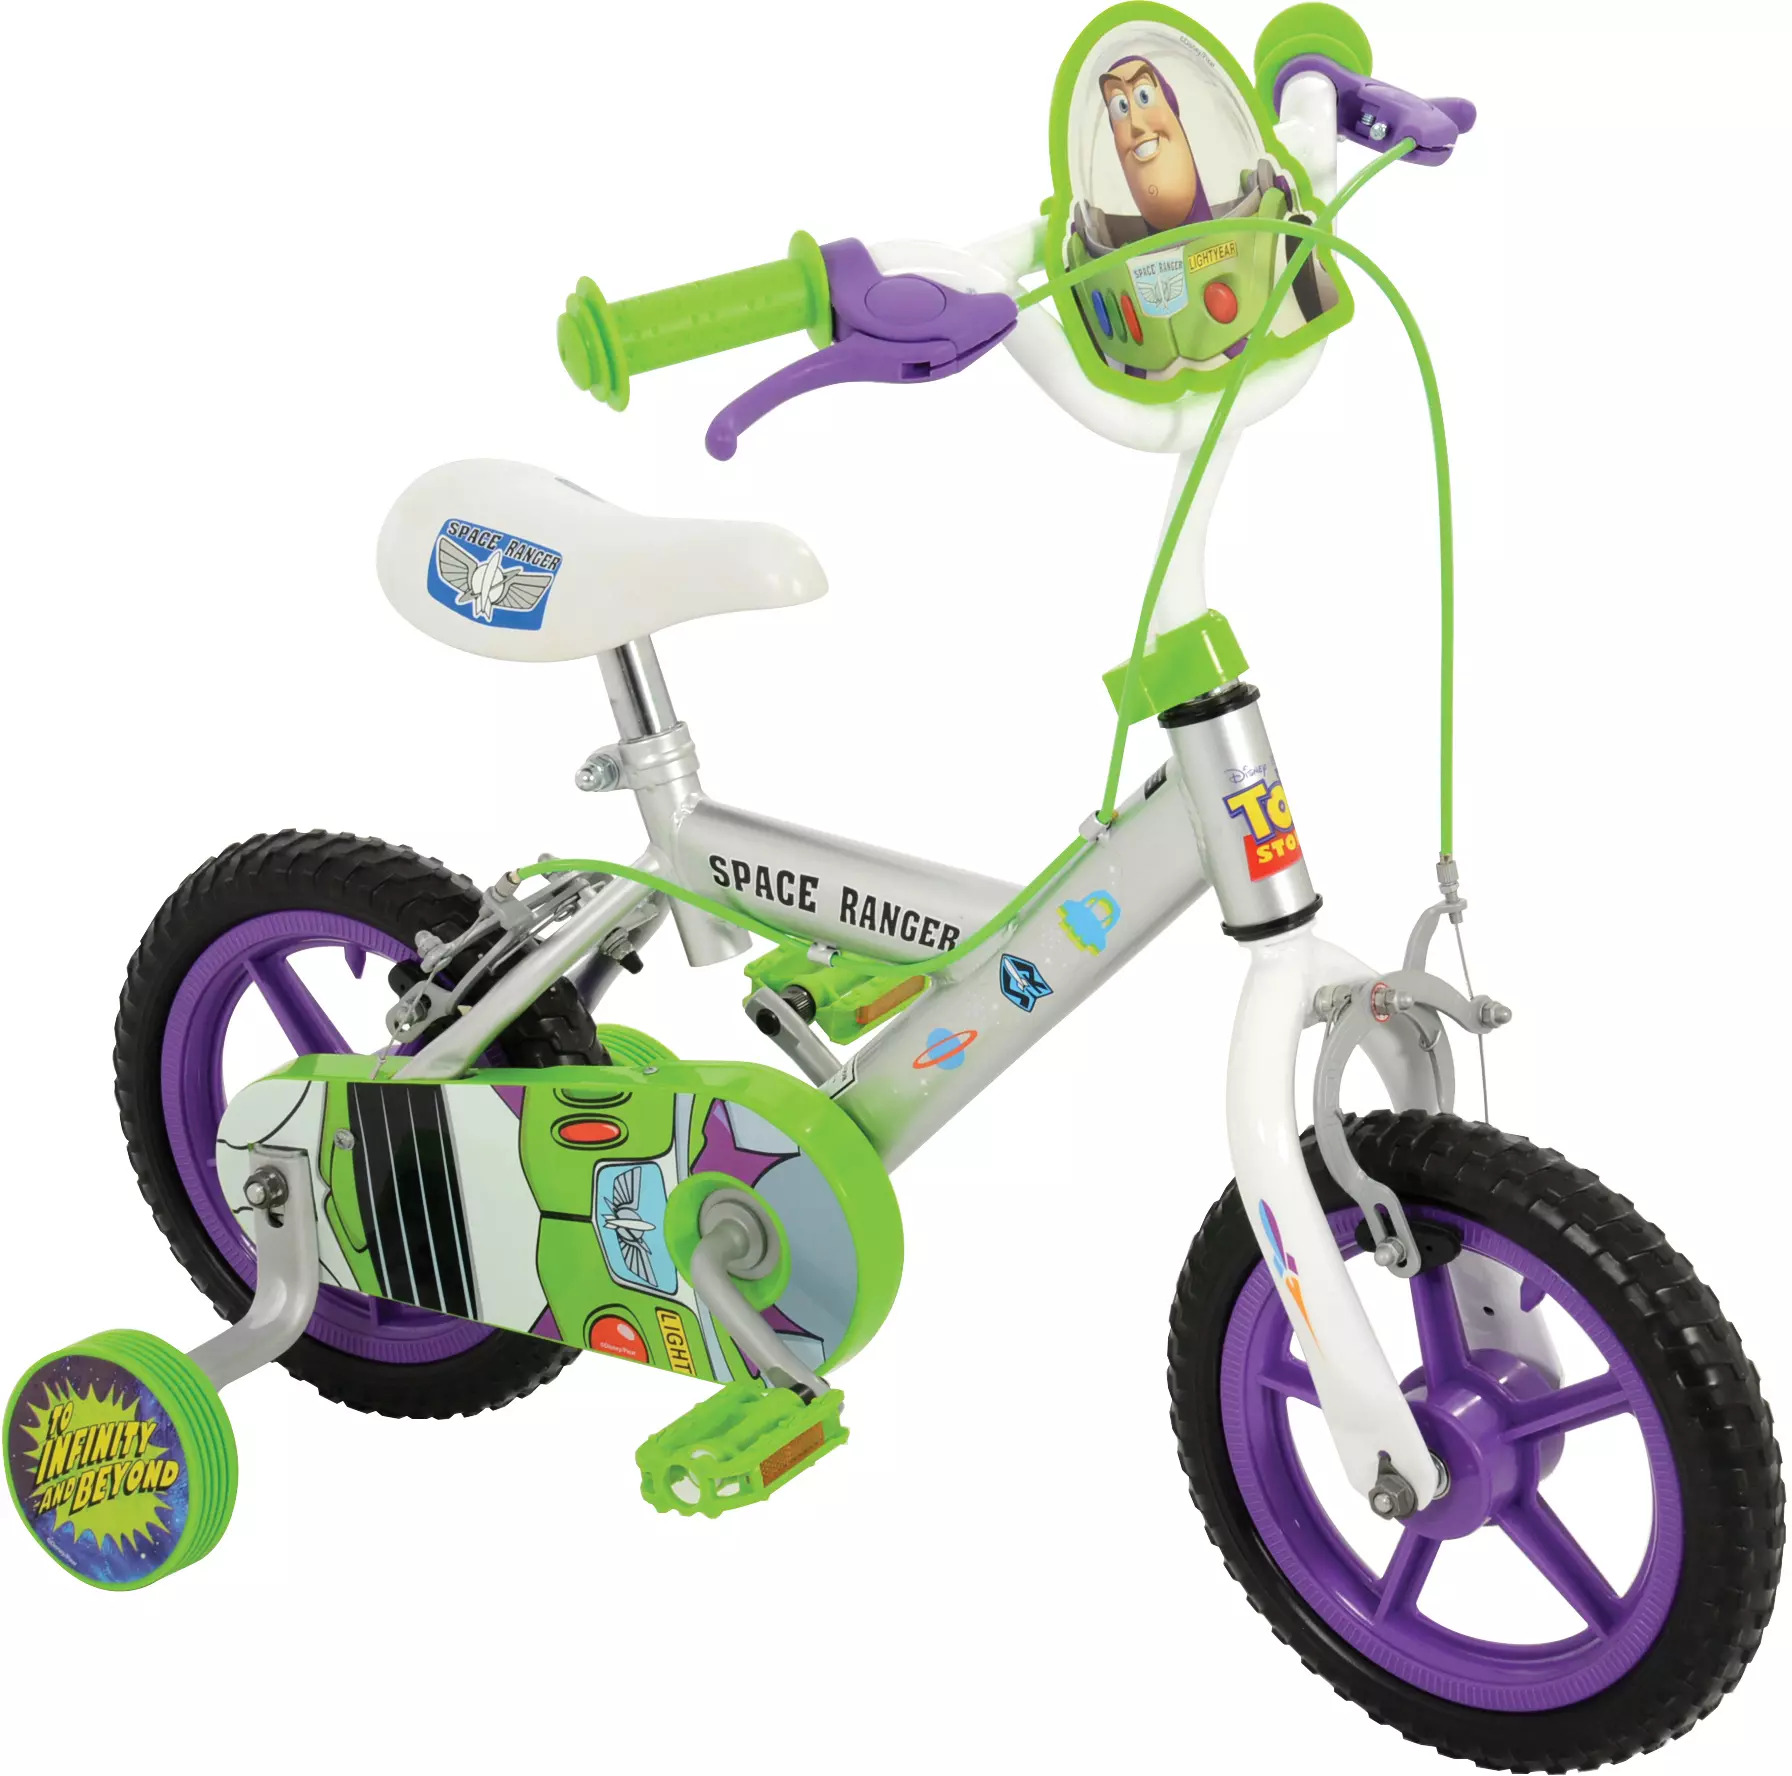 toy story bike 14 inch